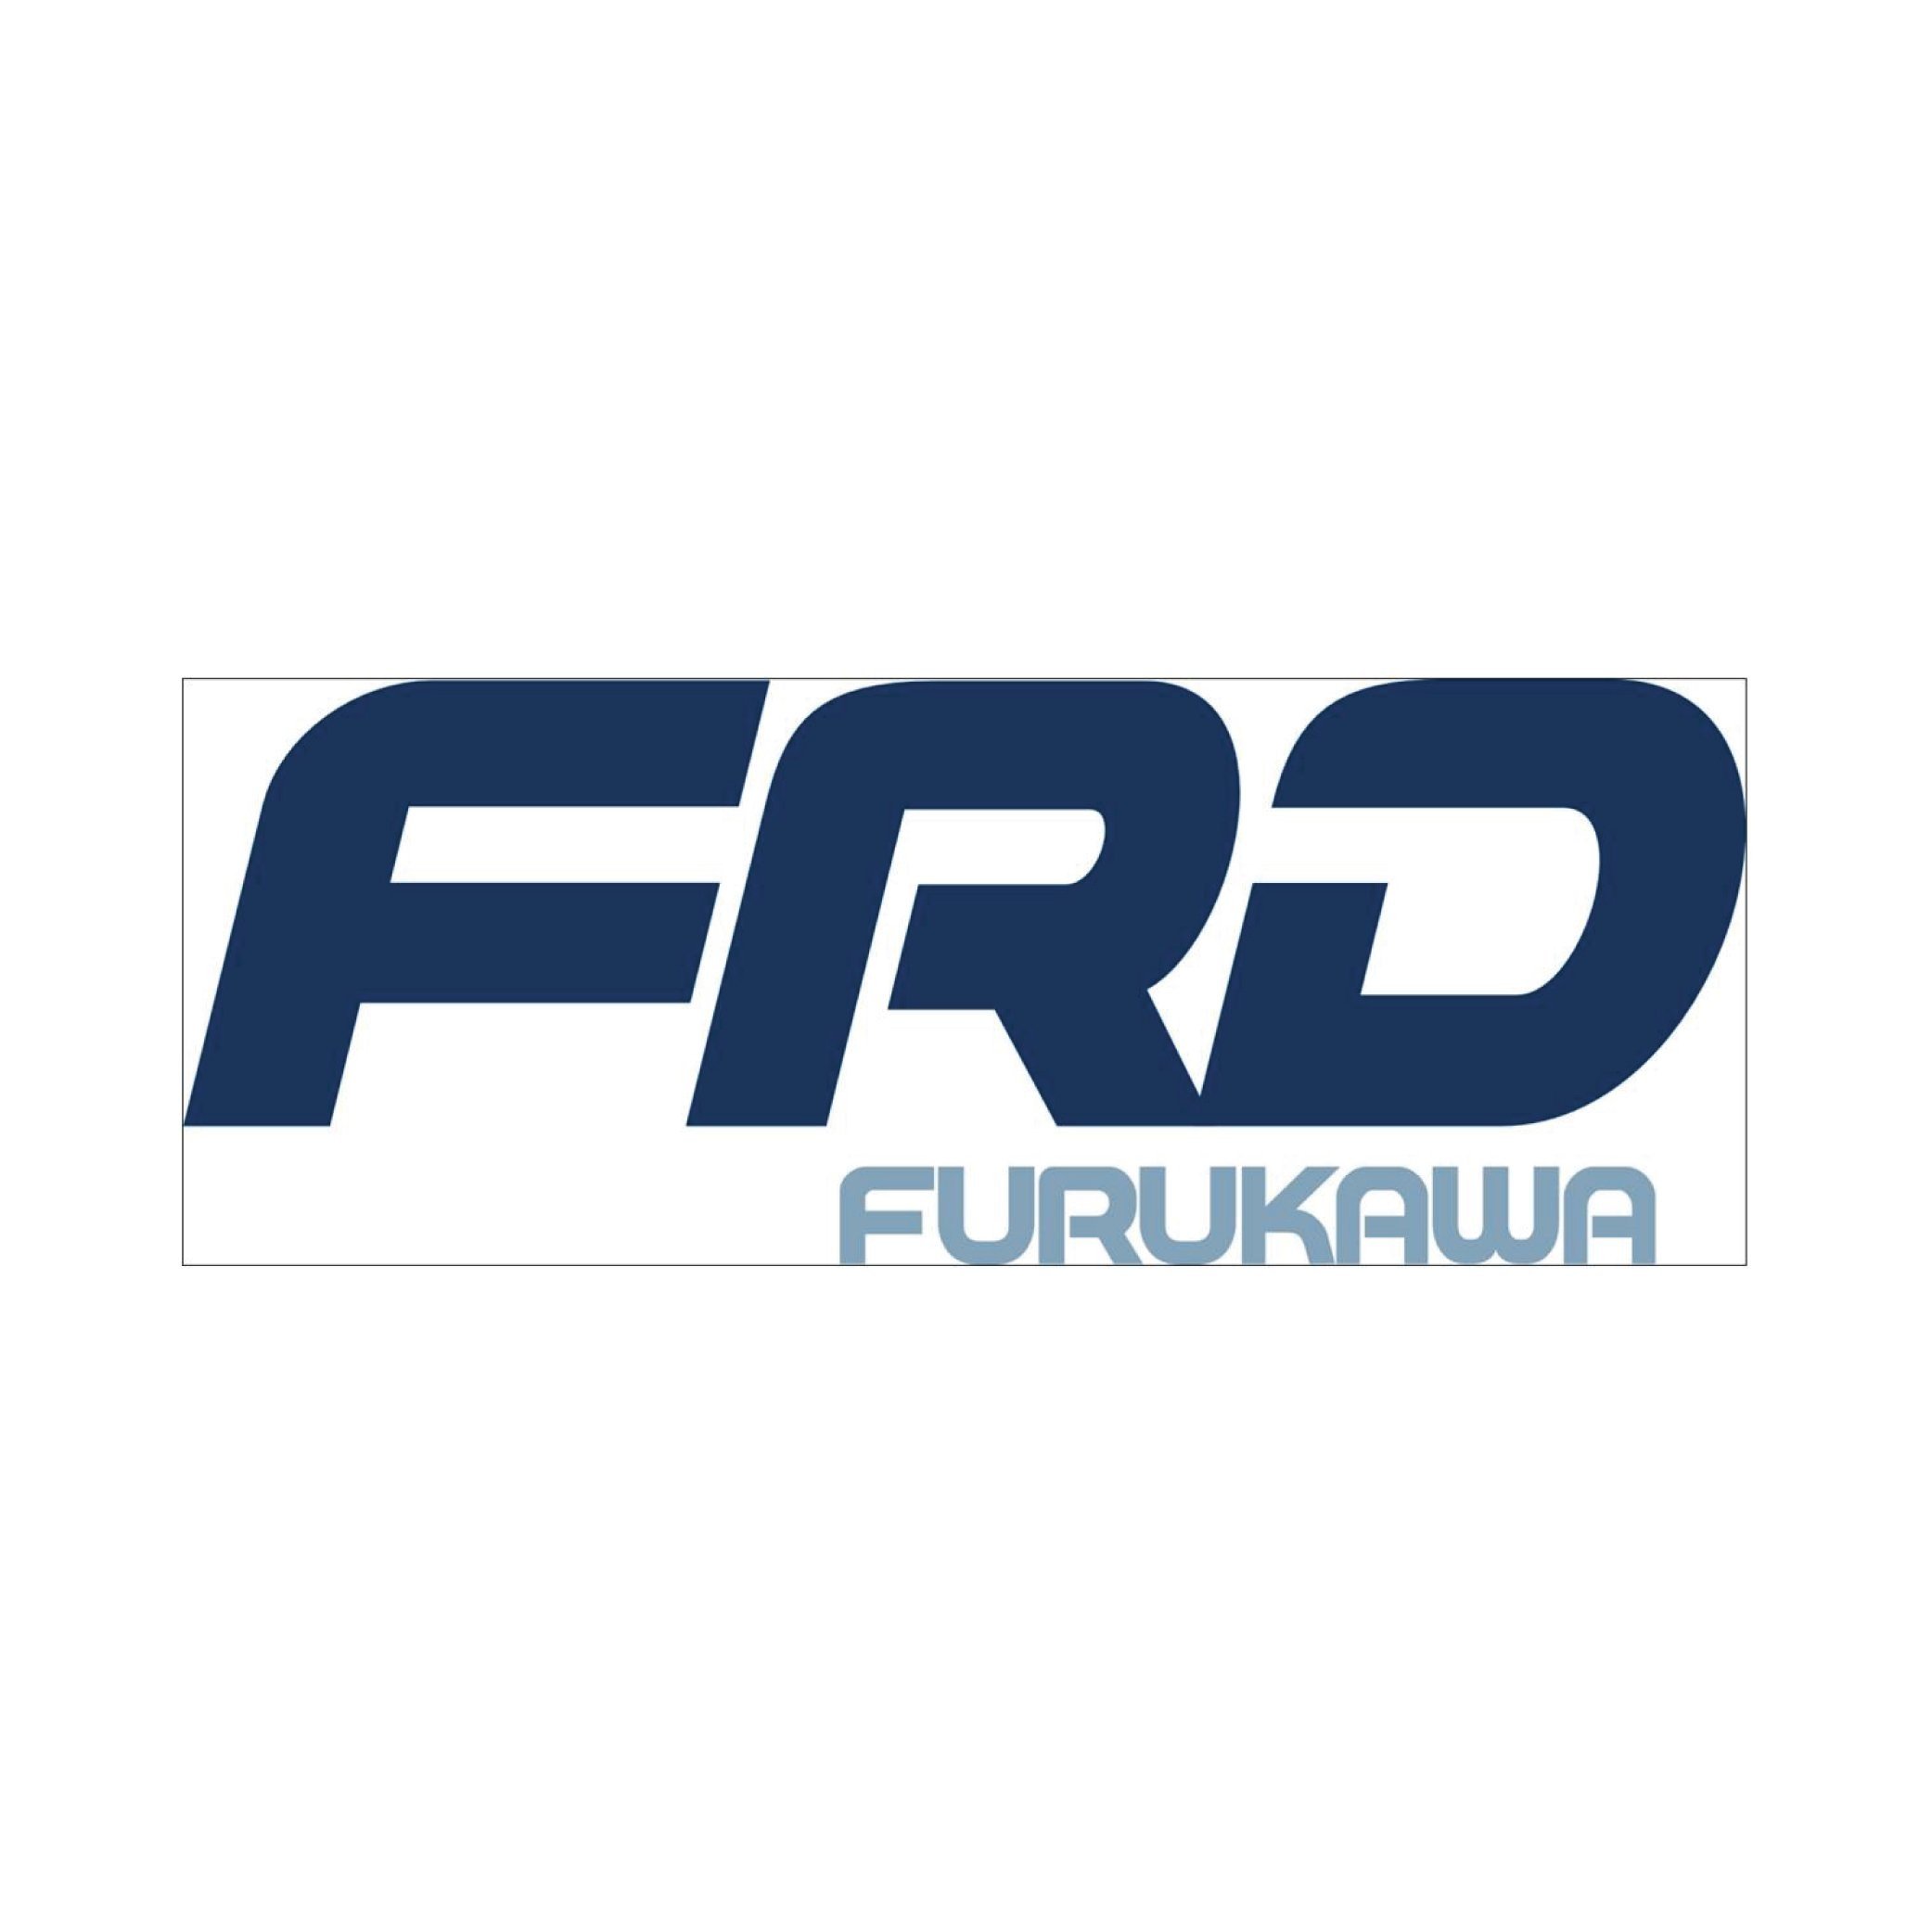 FRD_Furukawa-01.jpg